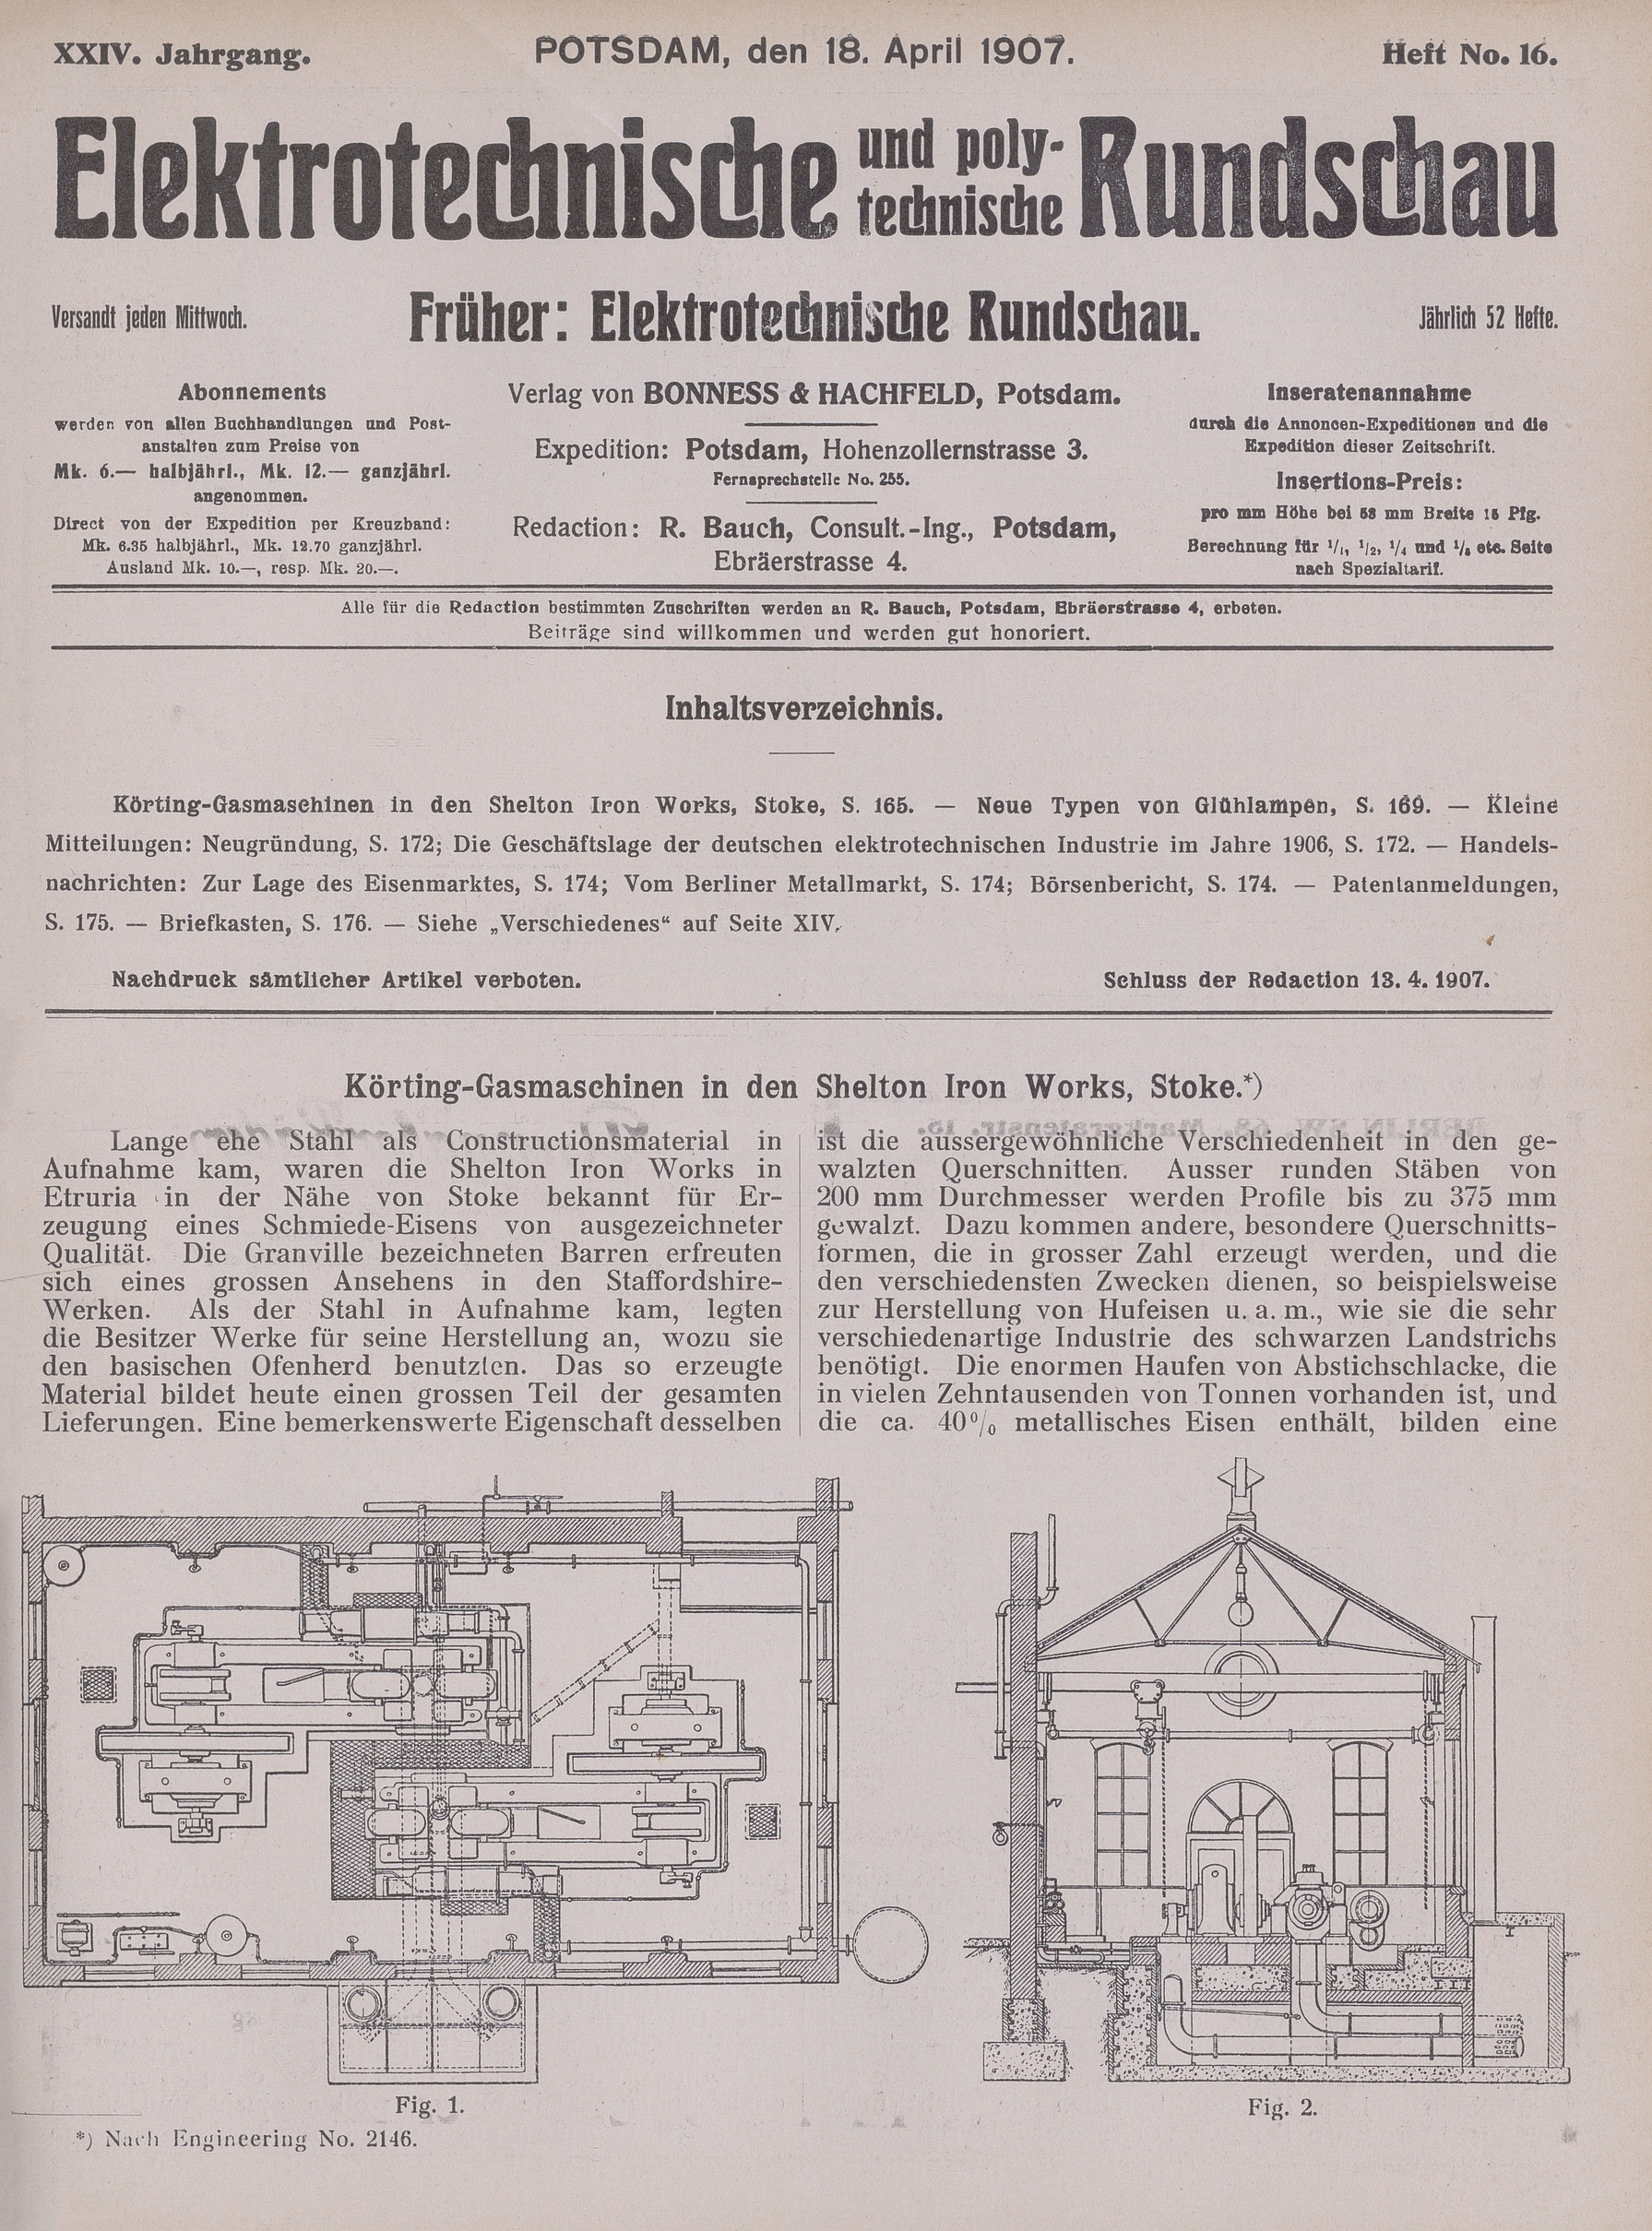 Elektrotechnische und polytechnische Rundschau, XXIV. Jahrgang, Heft No. 16